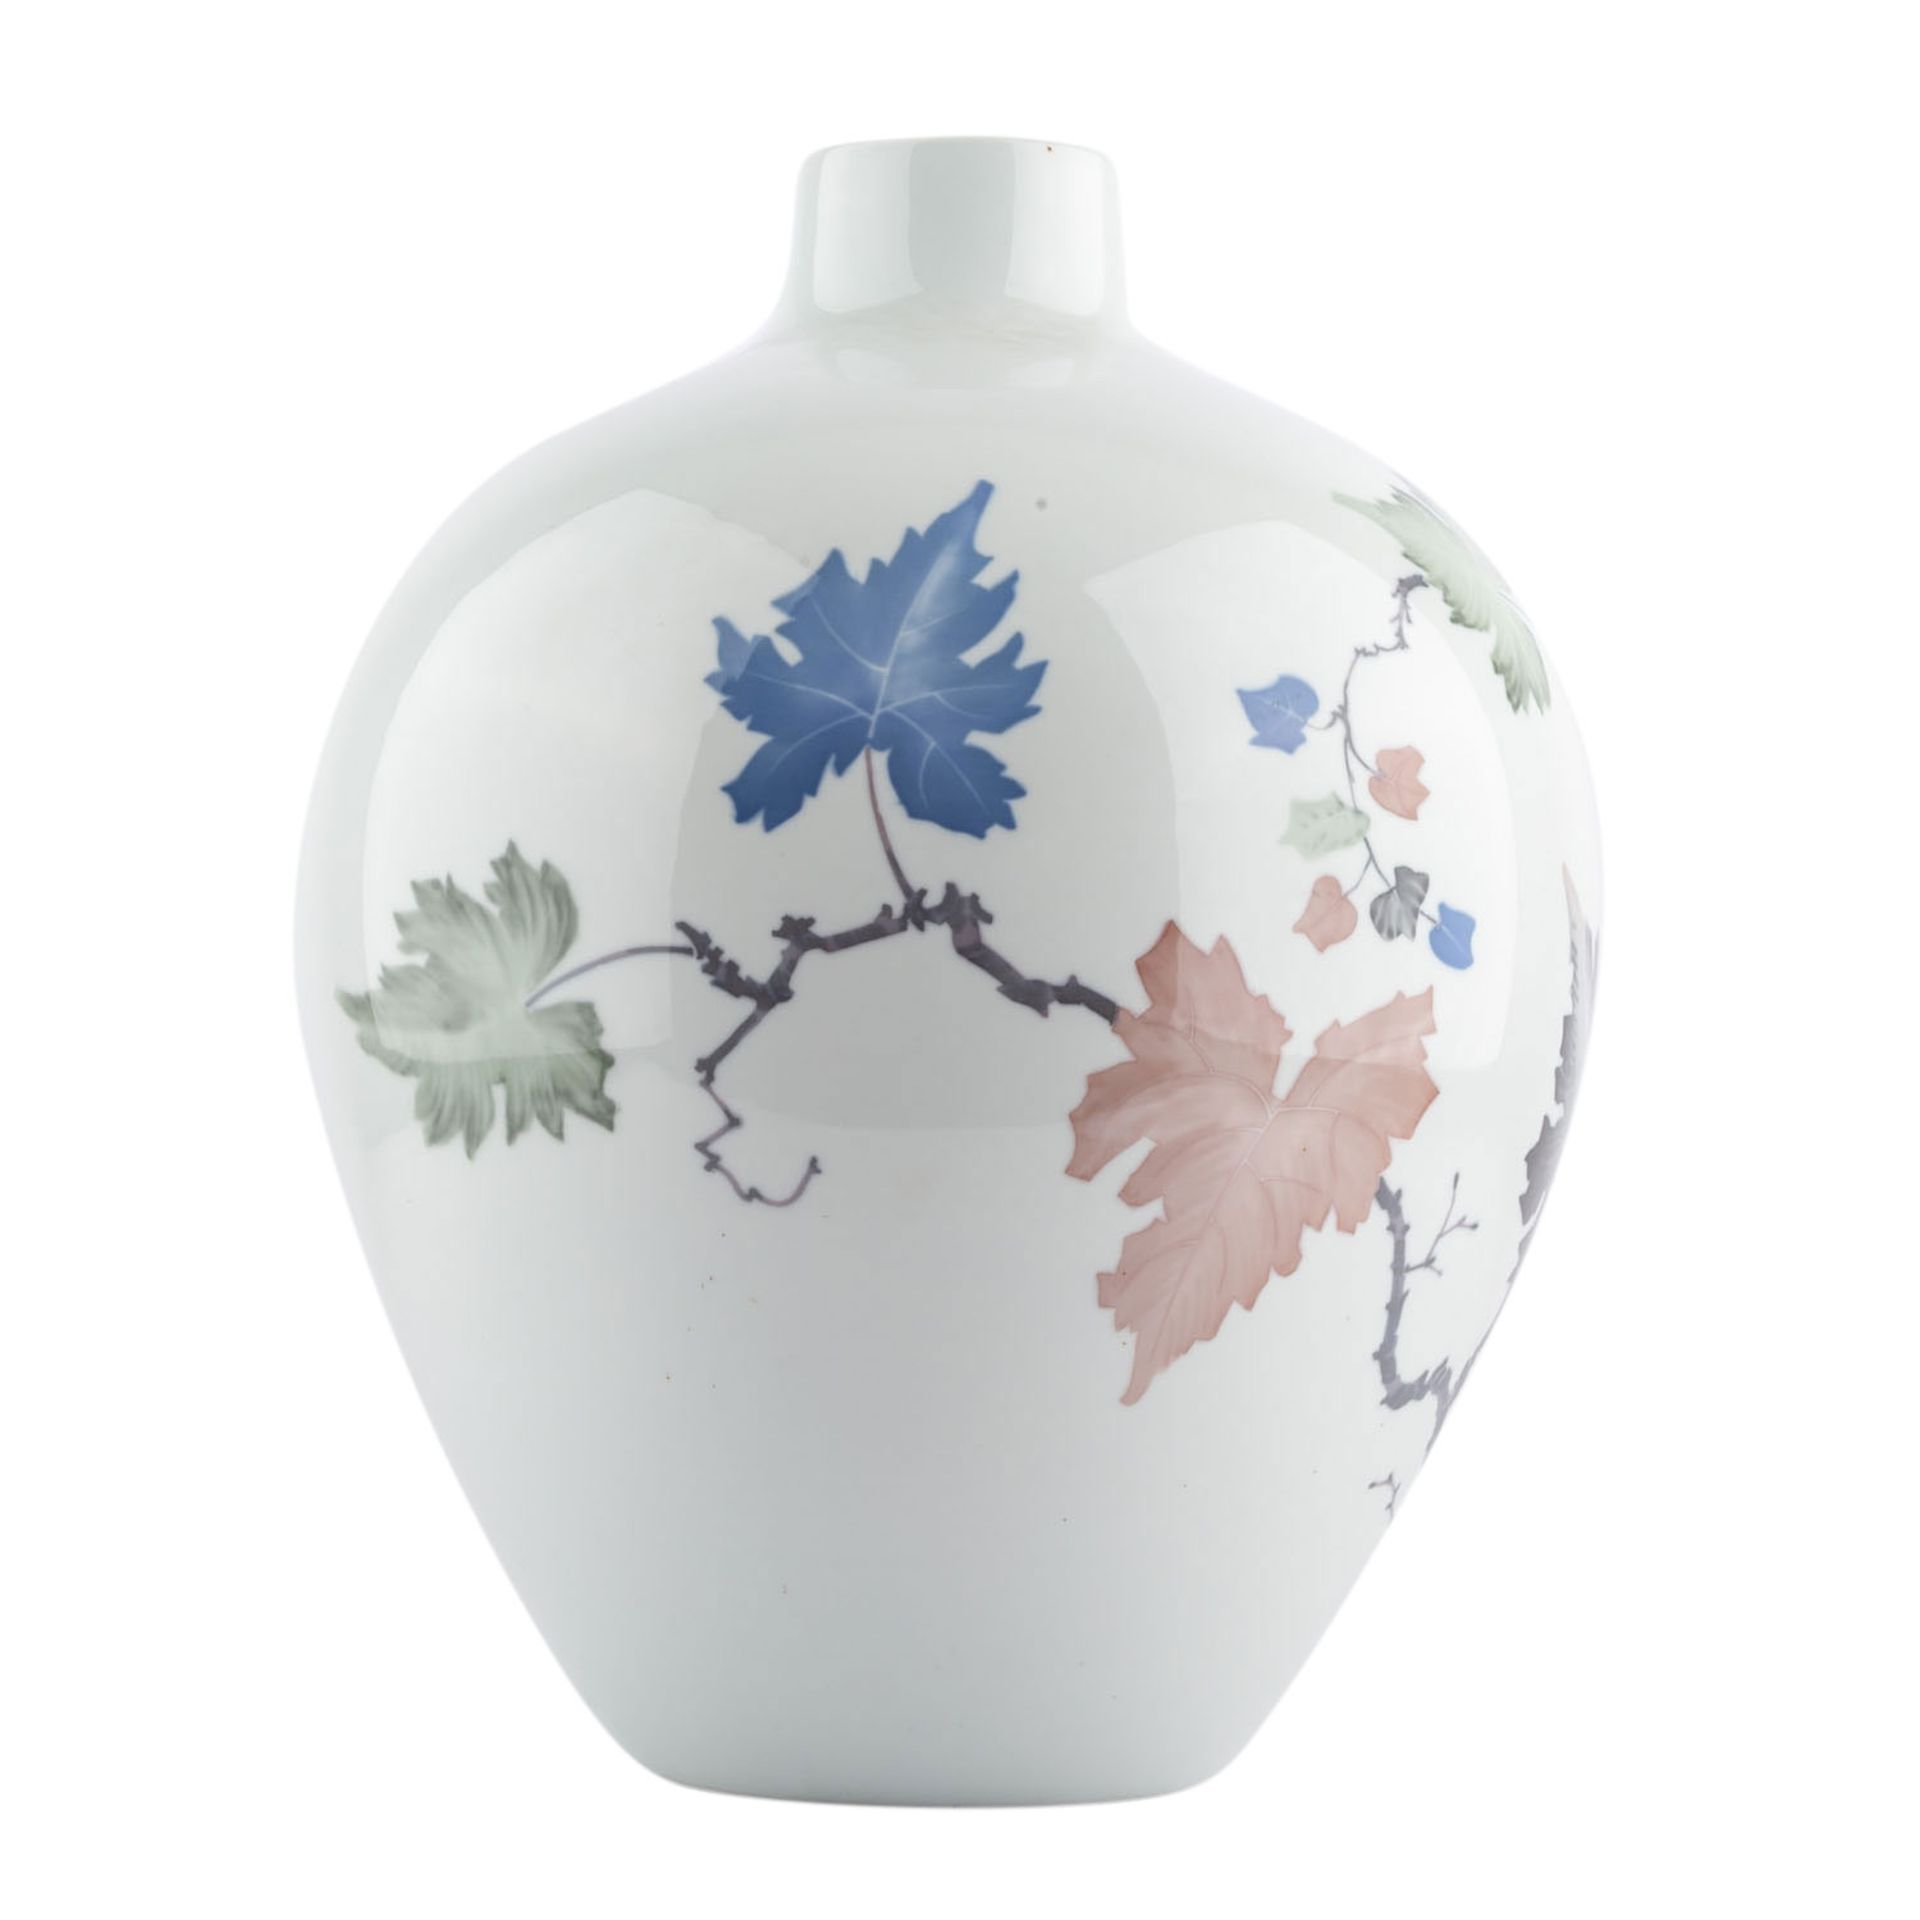 HUTSCHENREUTHER Bodenvase, Marke von 1939-1964.Weißporzellan mit einem Dekor von Weinranken, große